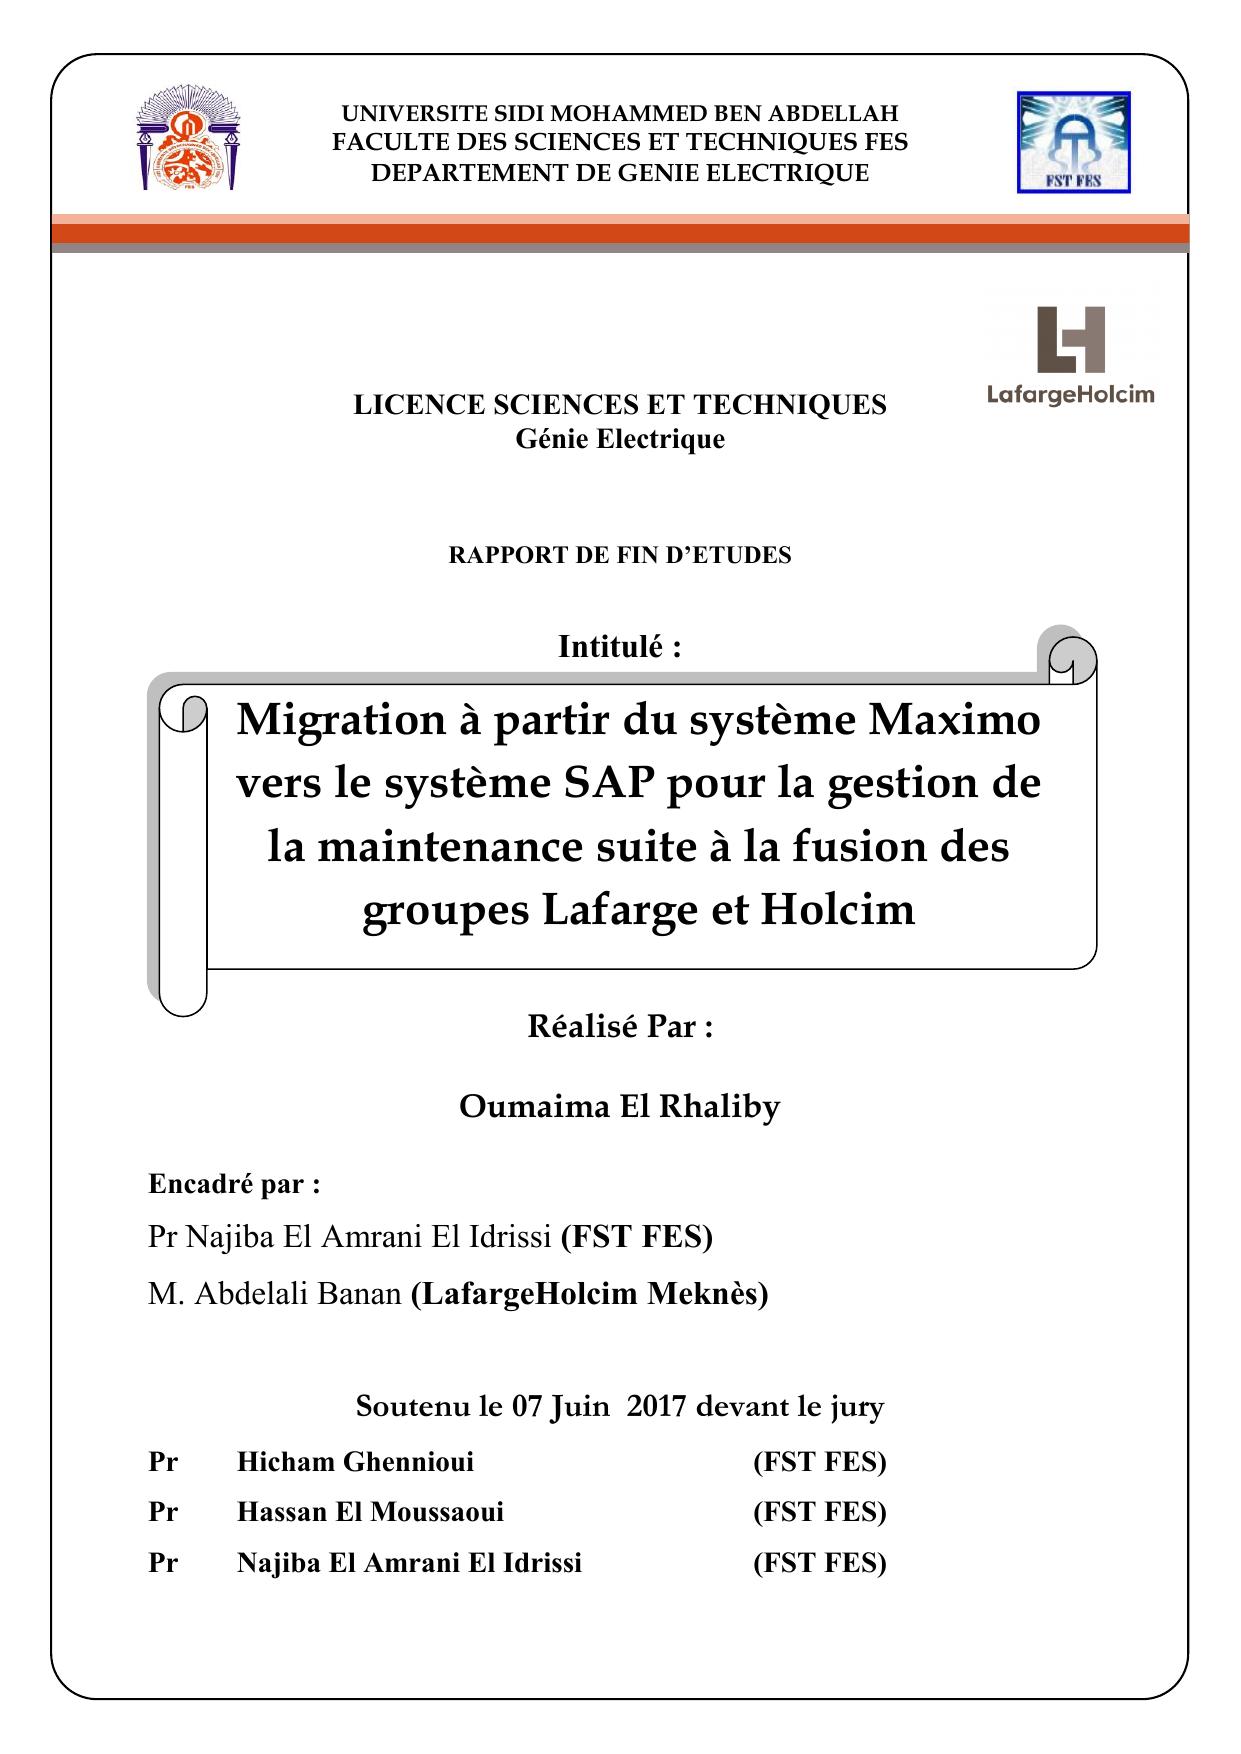 Migration à partir du système Maximo vers le système SAP pour la gestion de la maintenance suite à la fusion des groupes Lafarge et Holcim